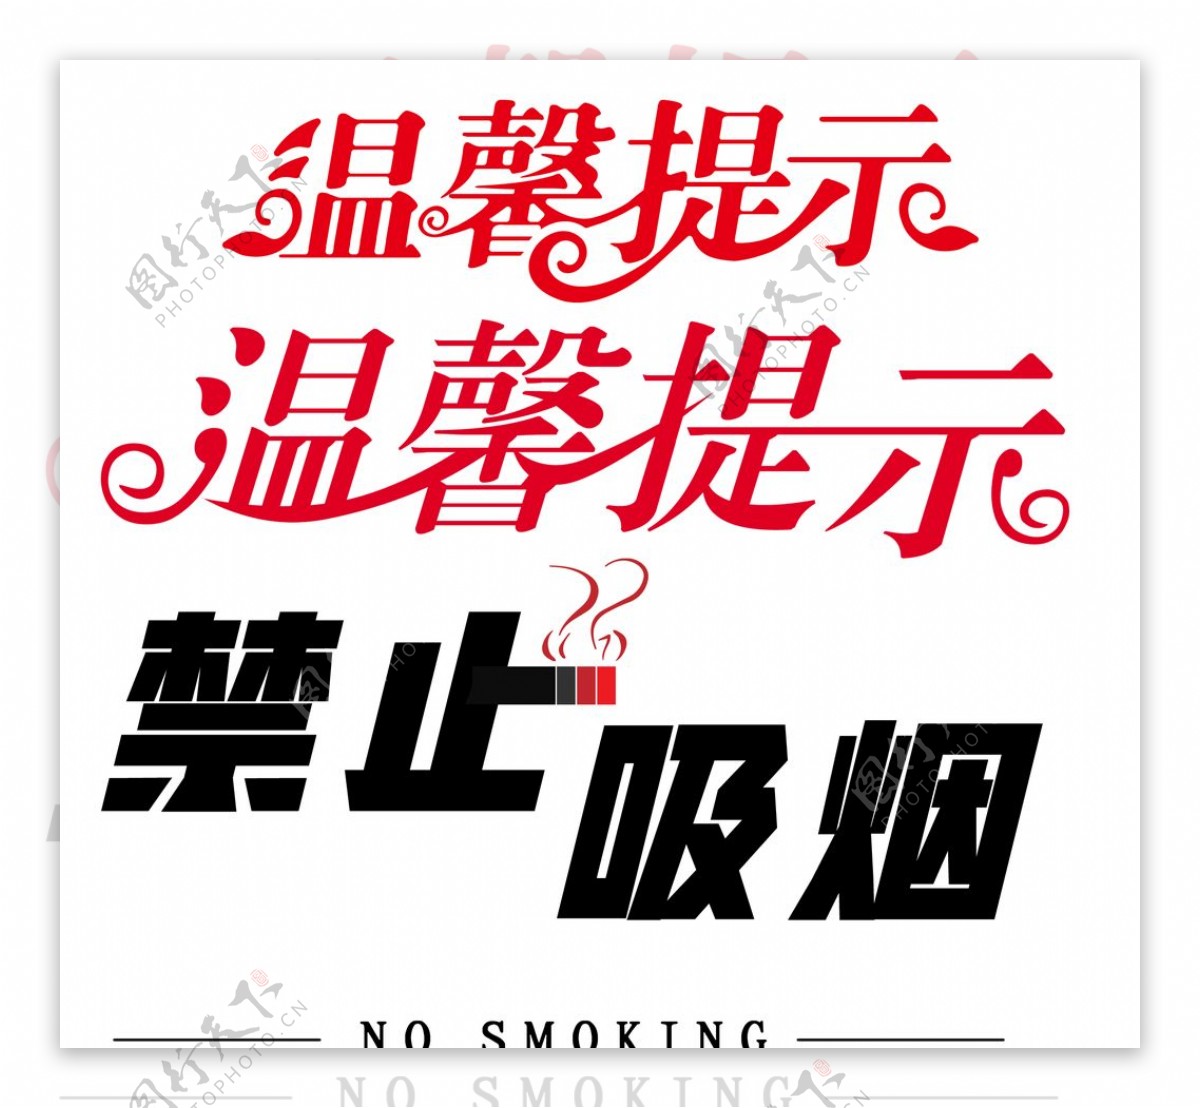 温馨提示禁止吸烟字体